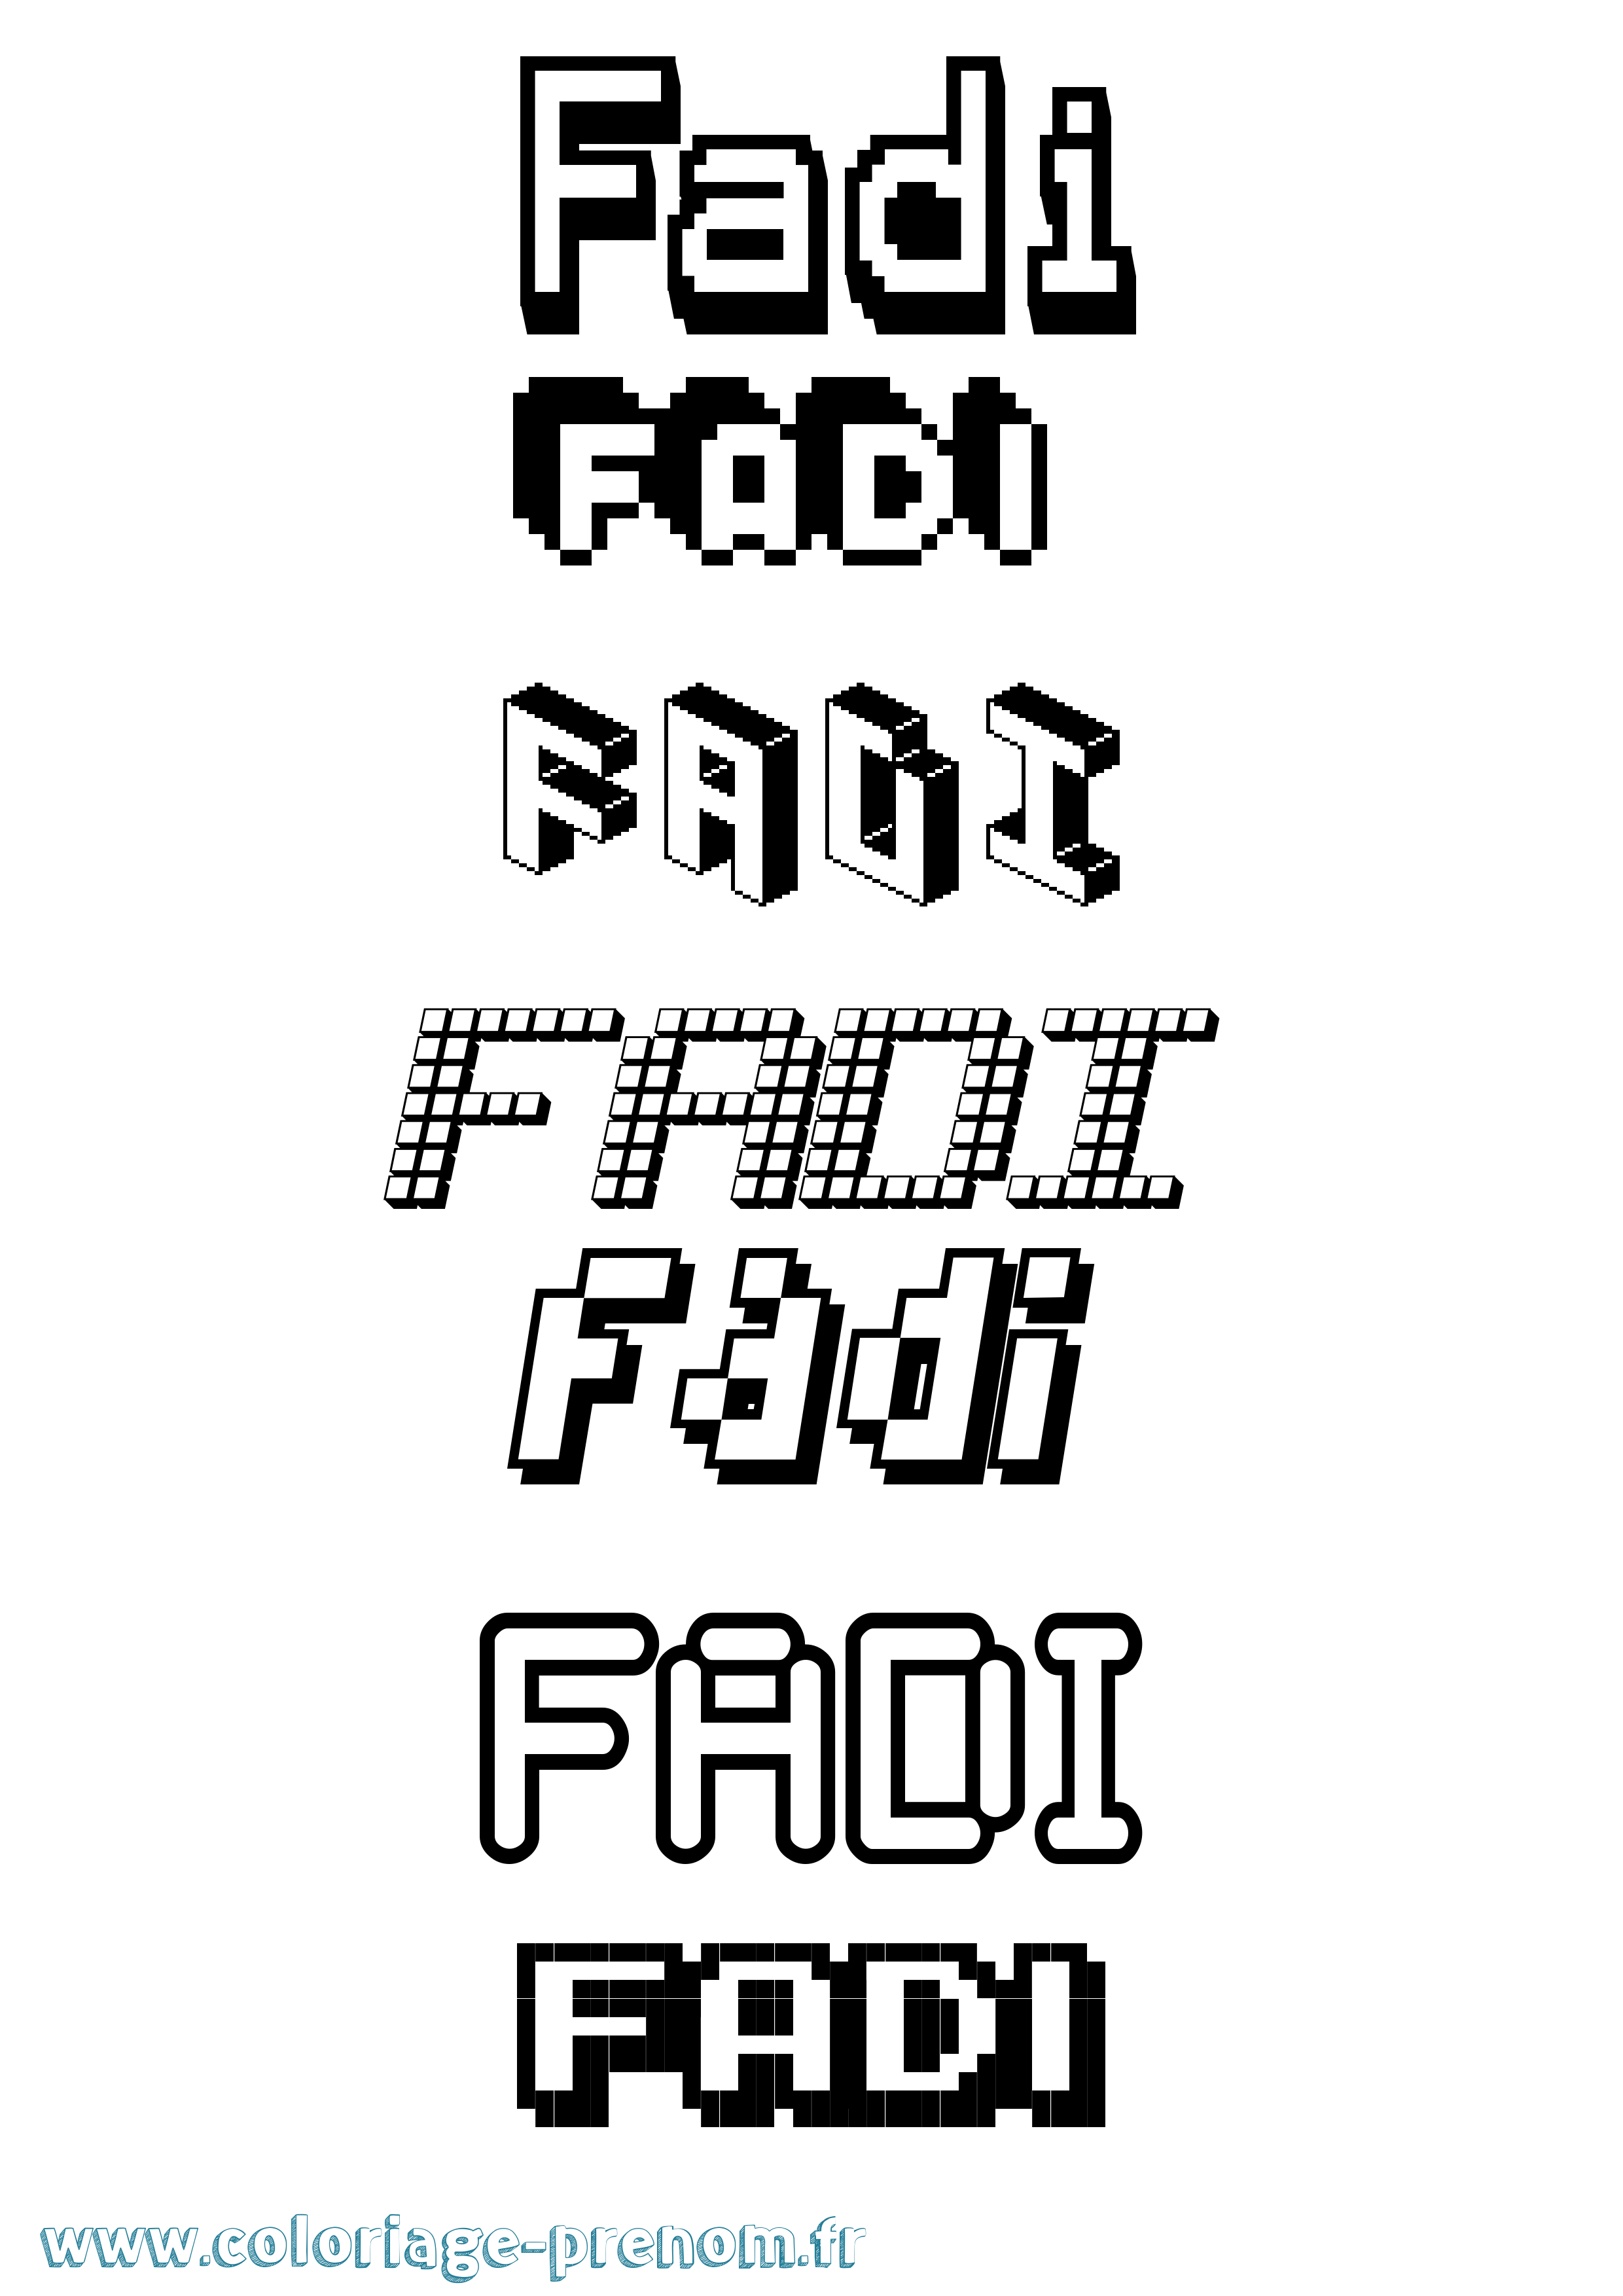 Coloriage prénom Fadi Pixel